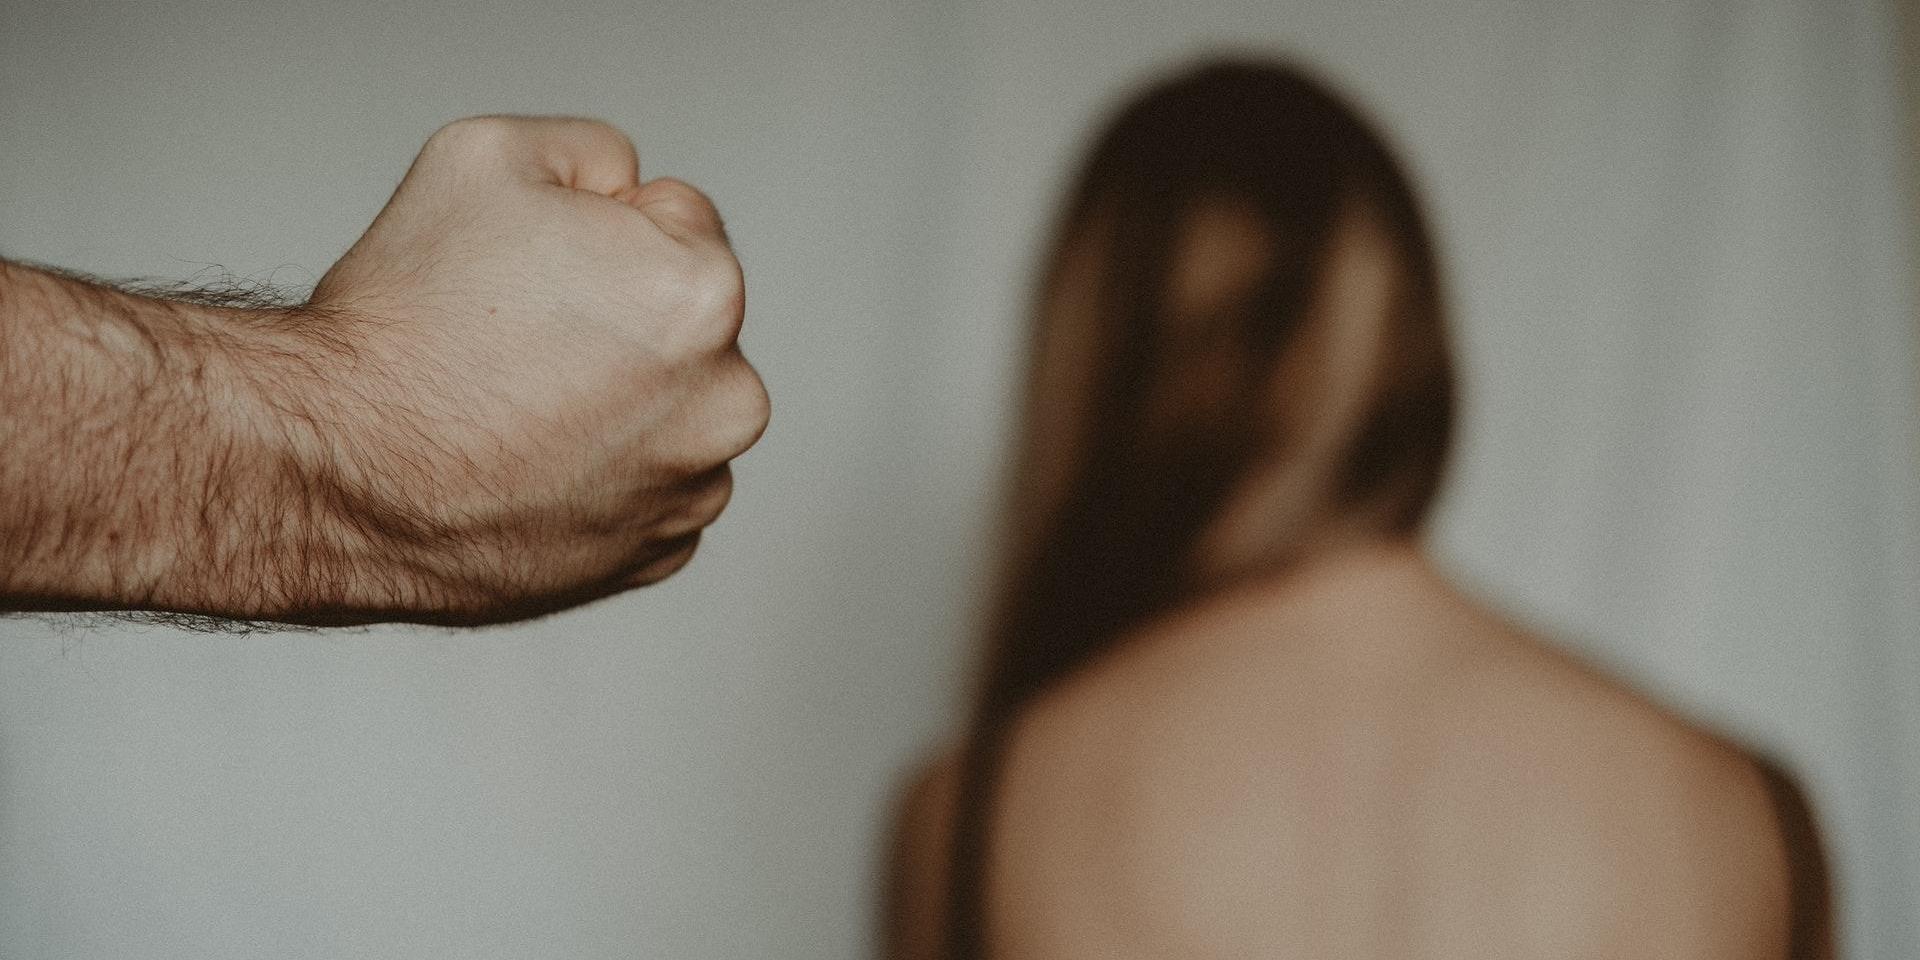 misshandel - en knuten näve, kvinna i bakgrunden - genrebild